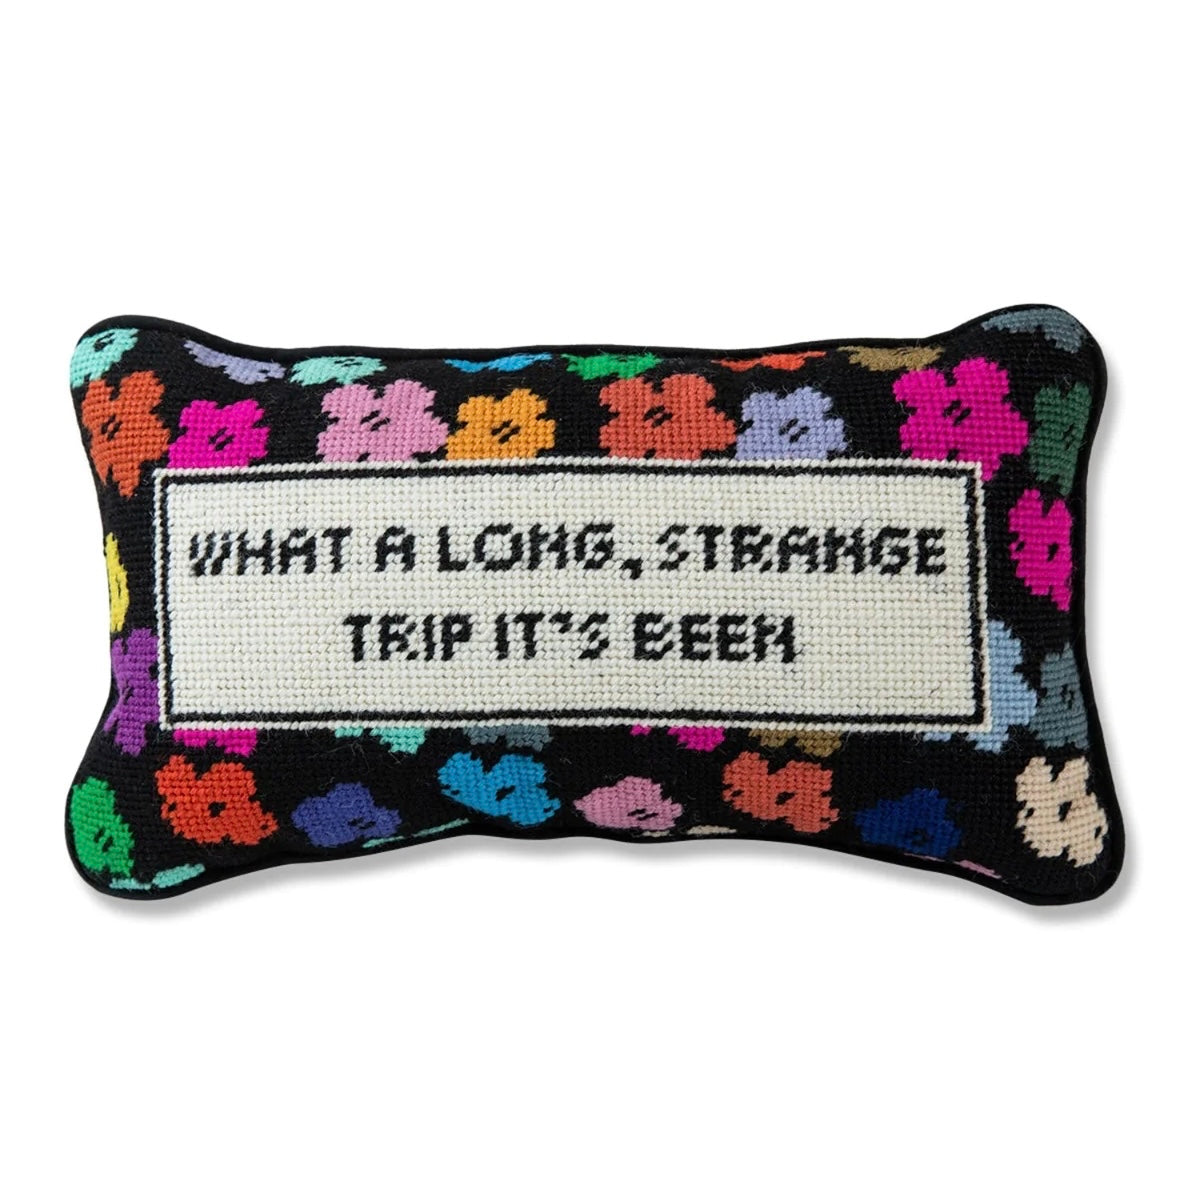 Furbish: Long Strange Trip Needlepoint Pillow